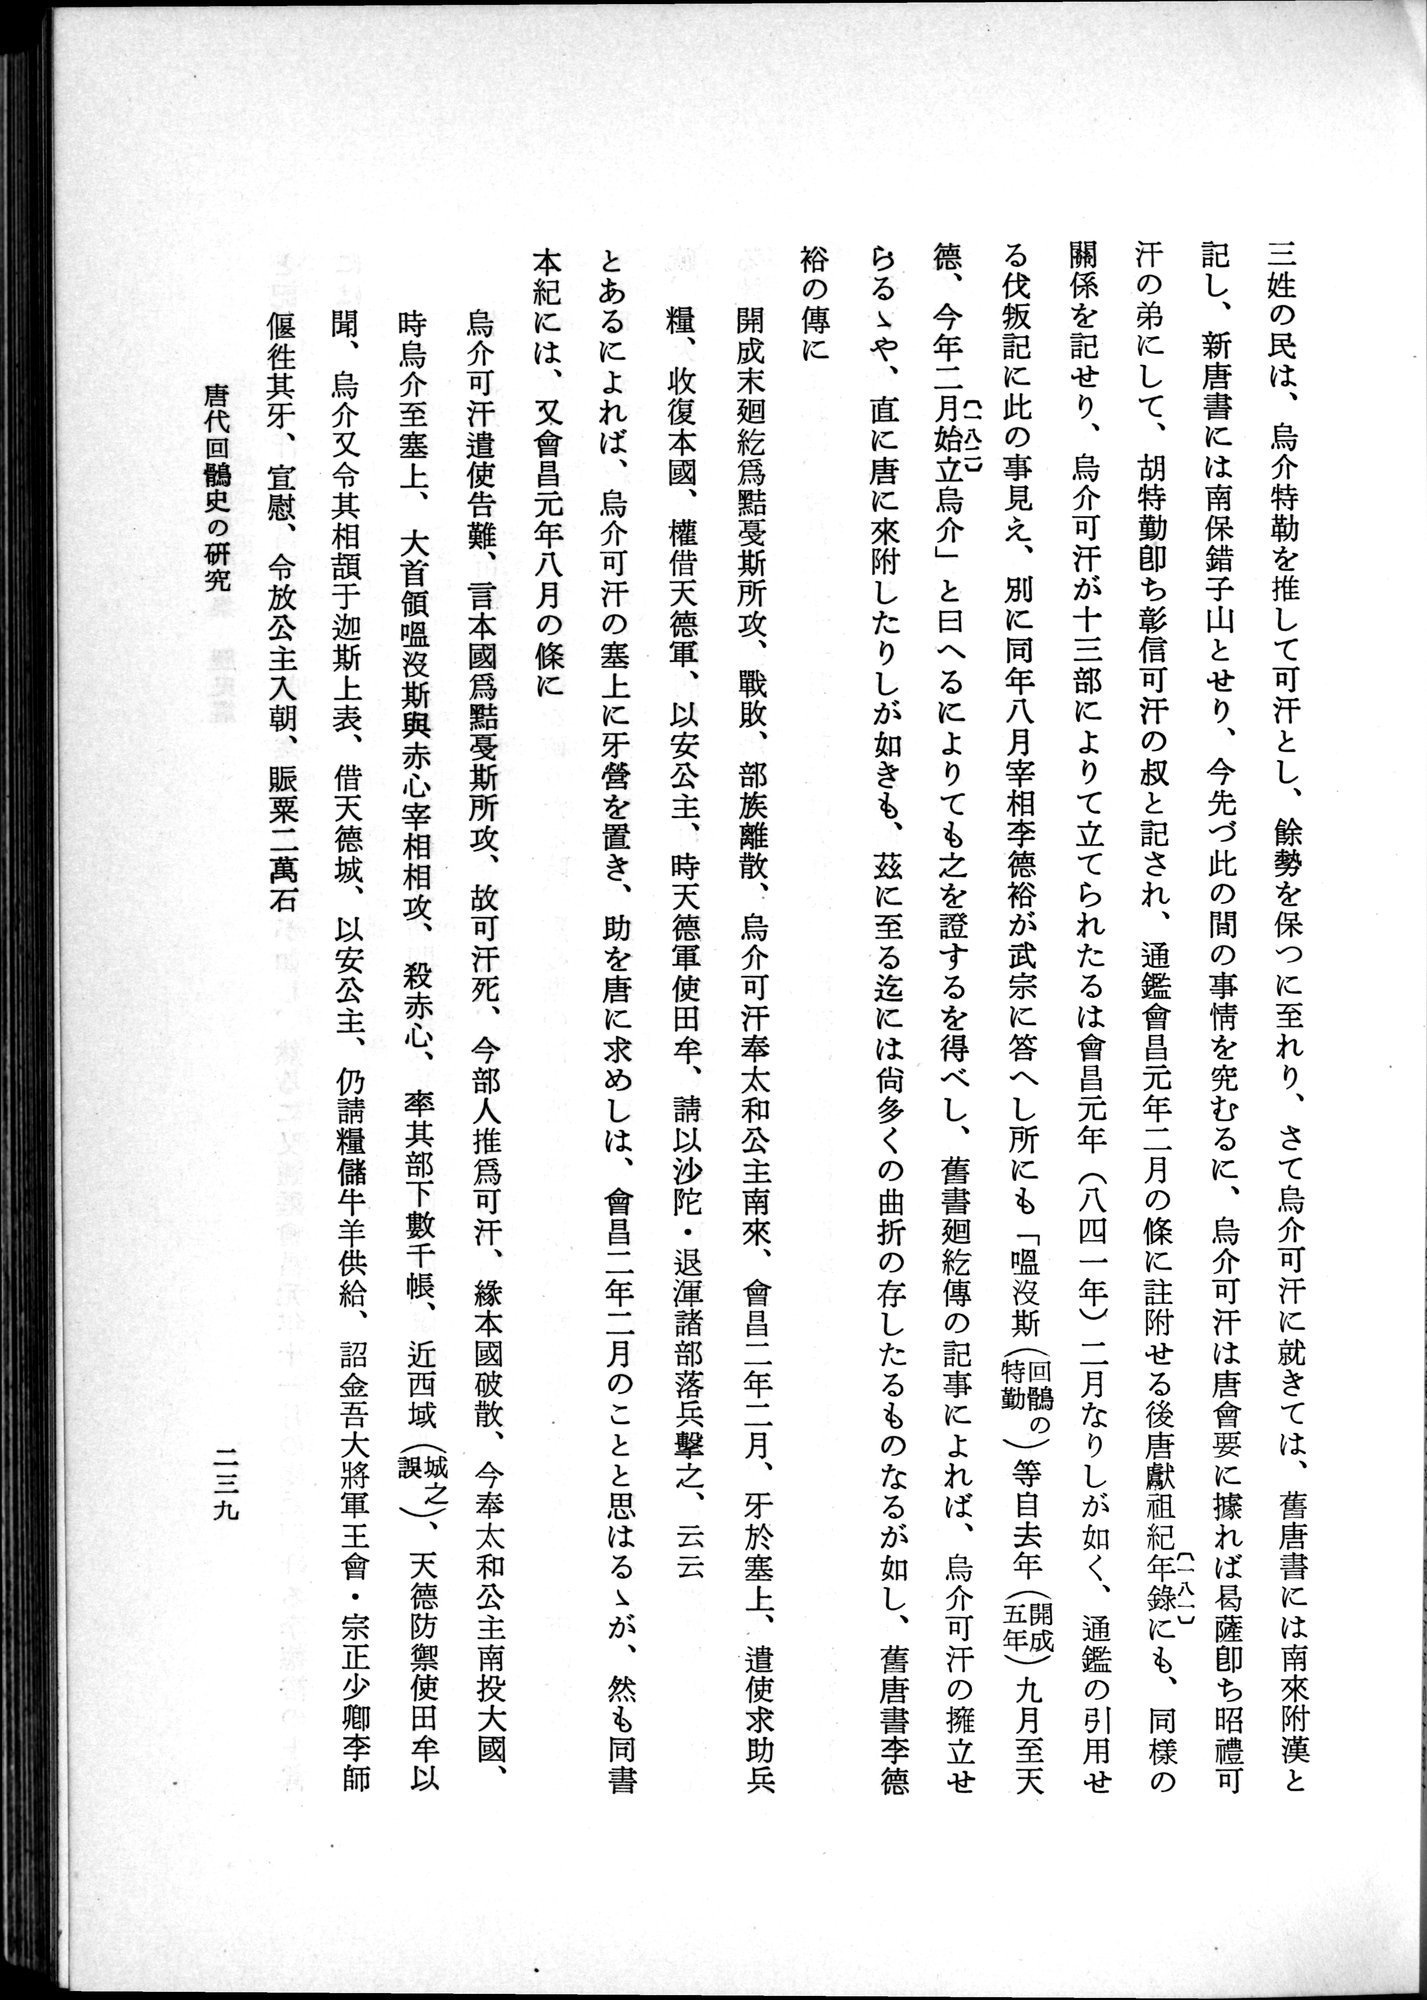 羽田博士史学論文集 : vol.1 / Page 277 (Grayscale High Resolution Image)